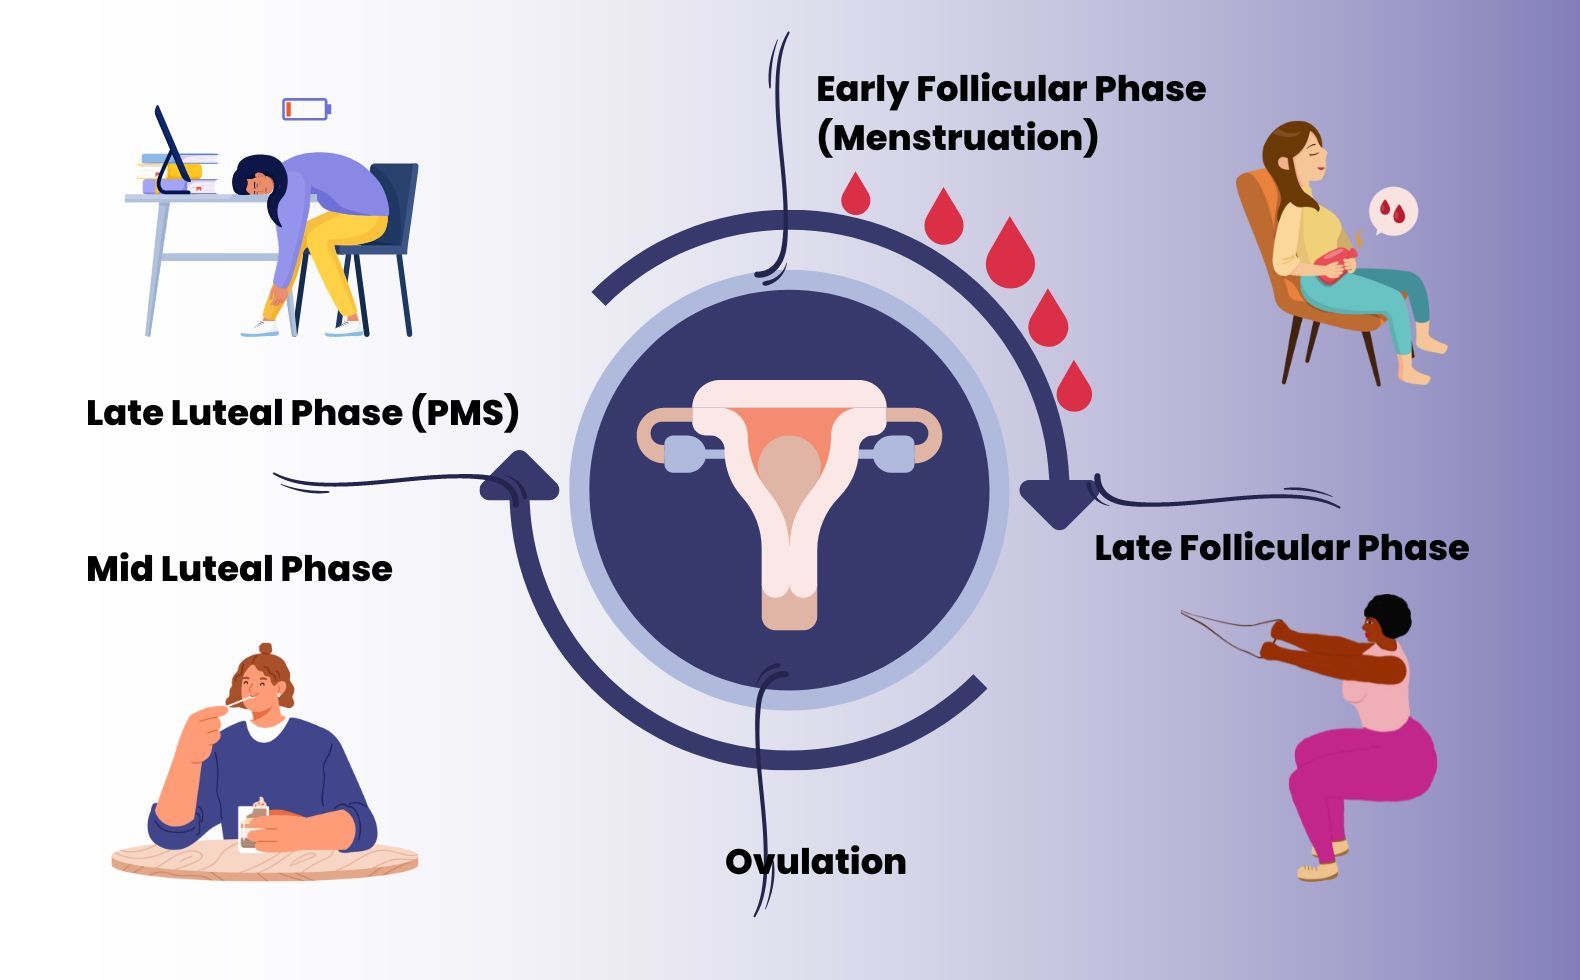 Understanding your Menstrual Cycle